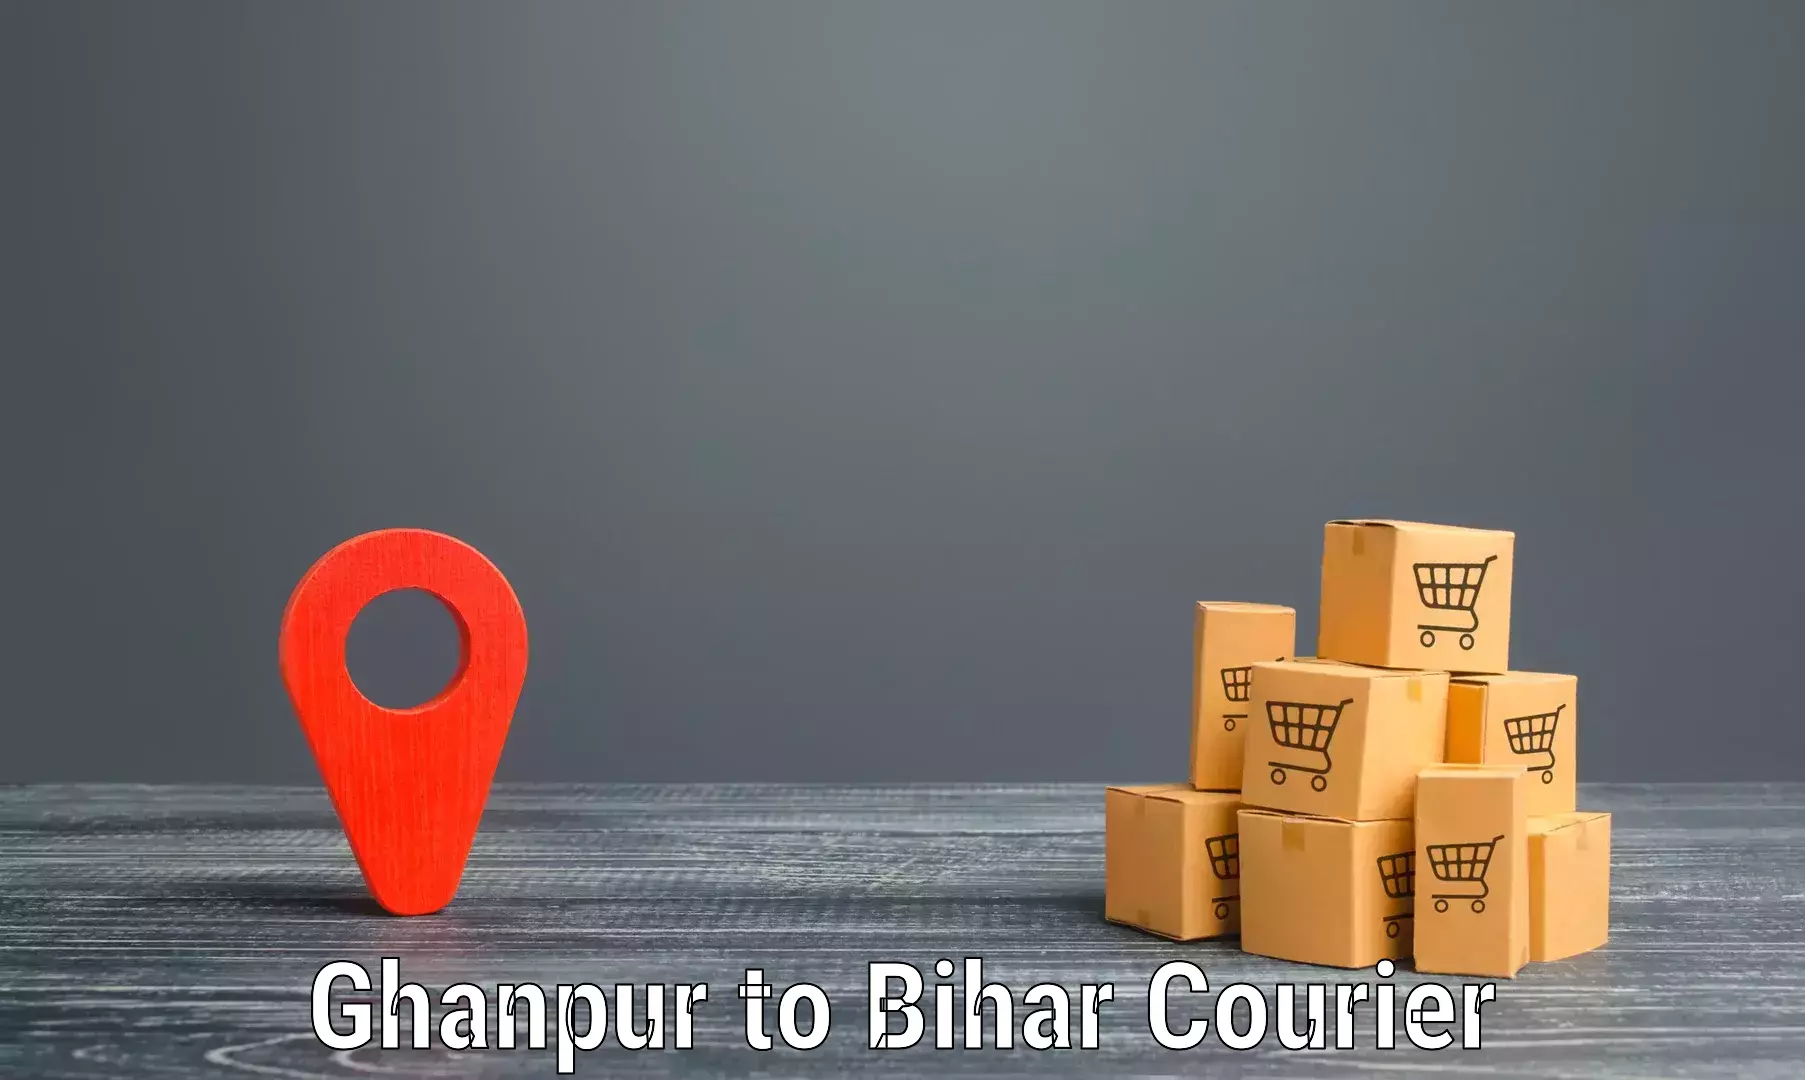 Customer-centric shipping Ghanpur to Tekari